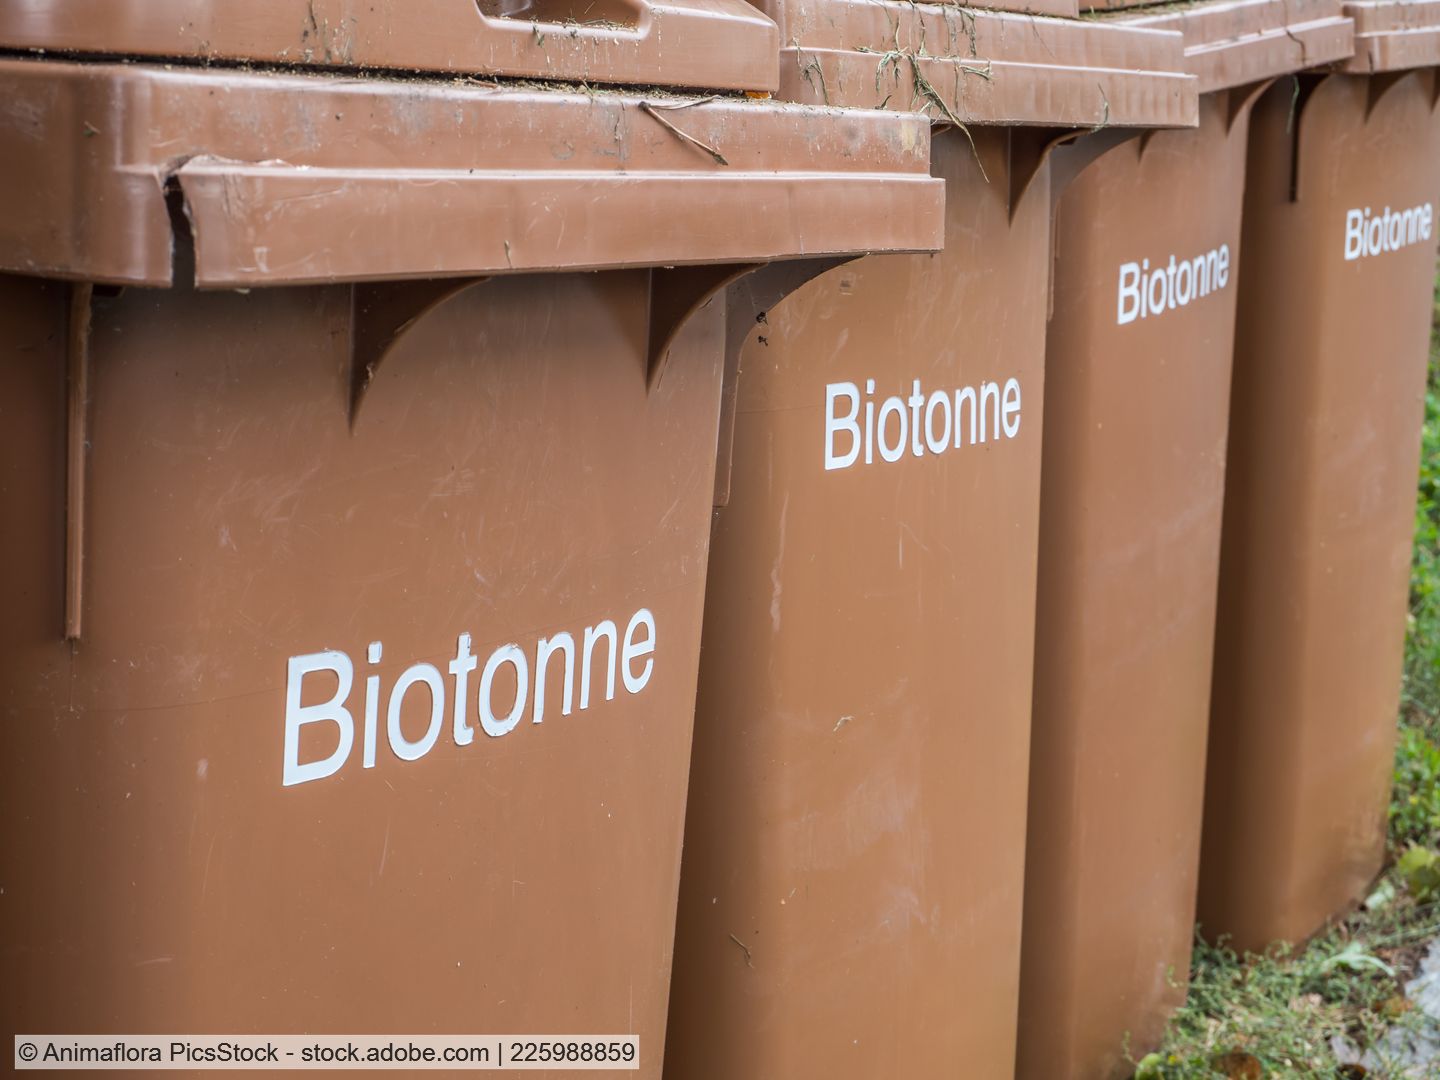 22 Kommunen in NRW haben keine Biotonne